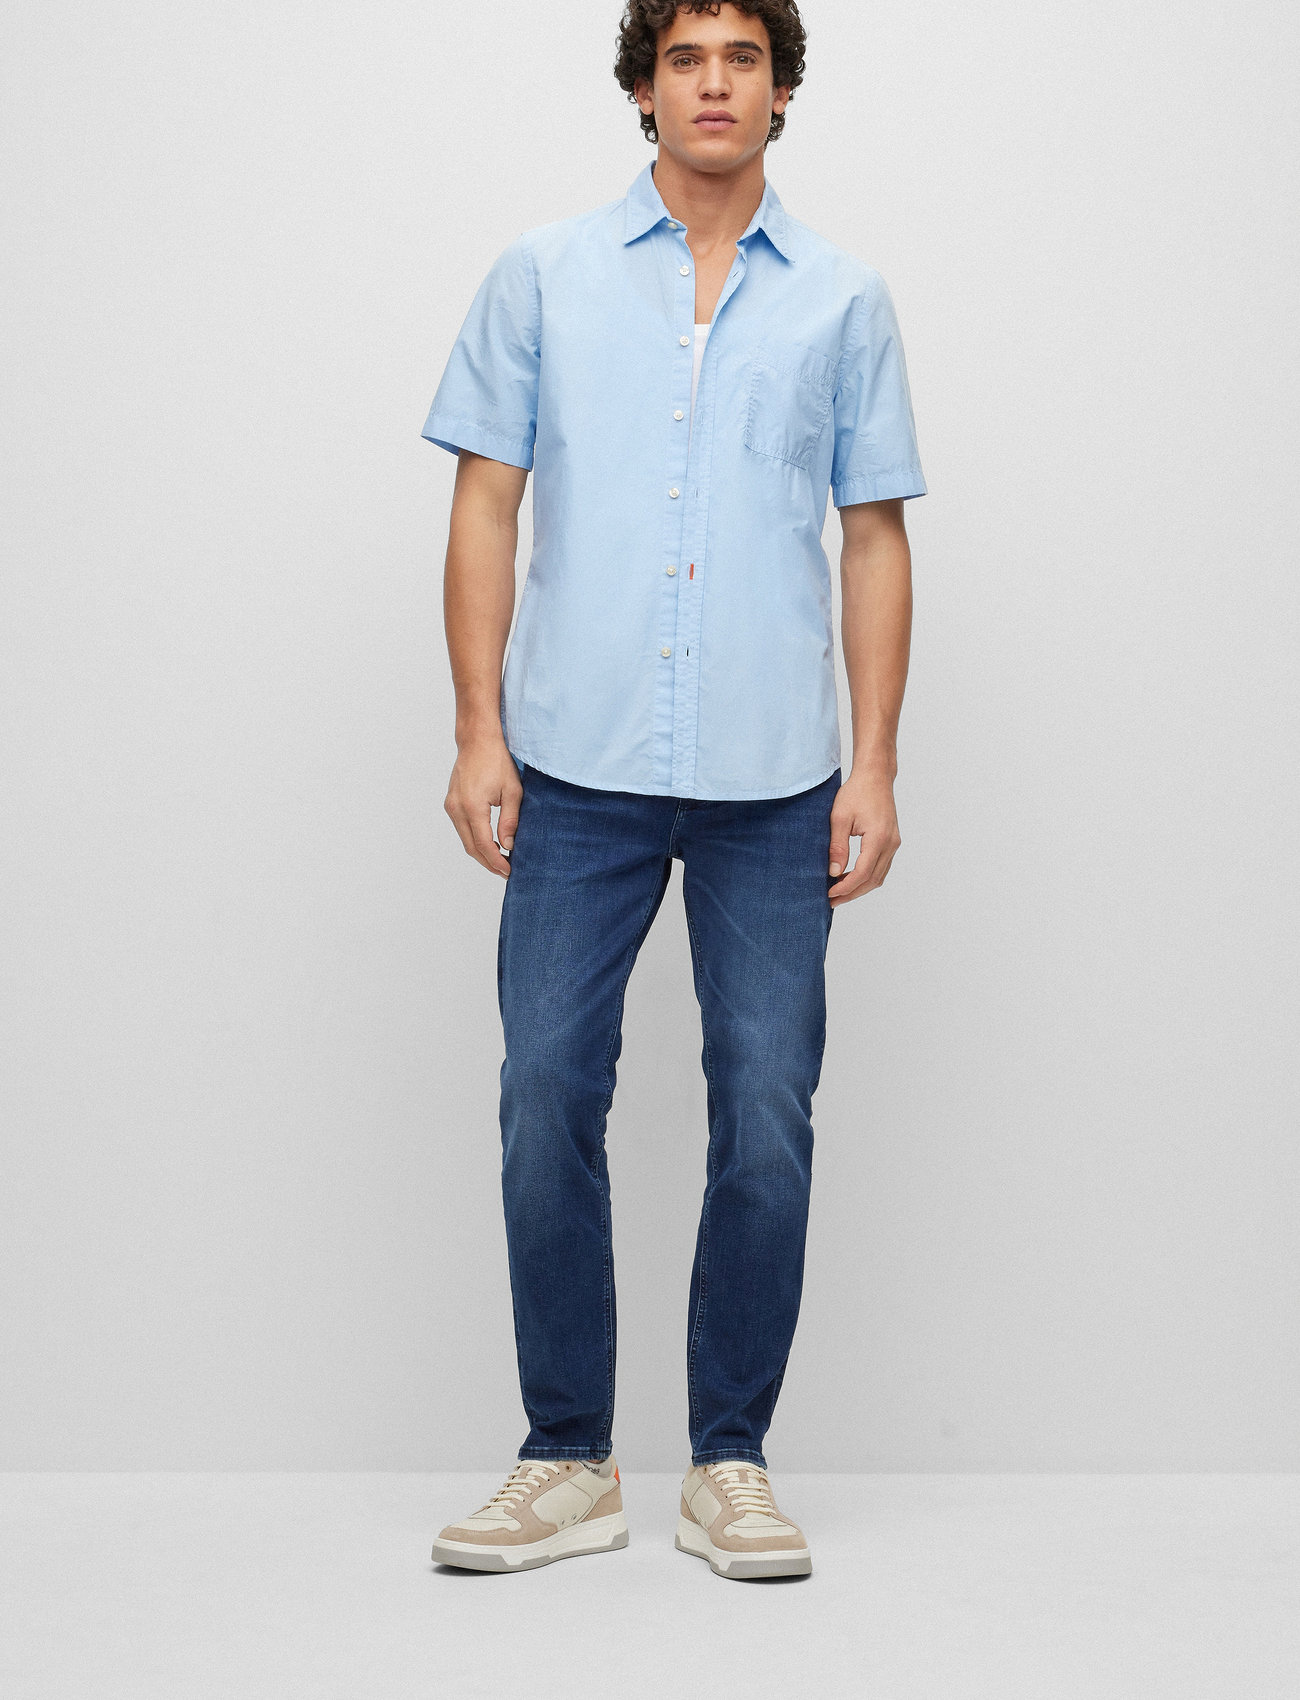 BOSS - Relegant_6-short - short-sleeved shirts - open blue - 1